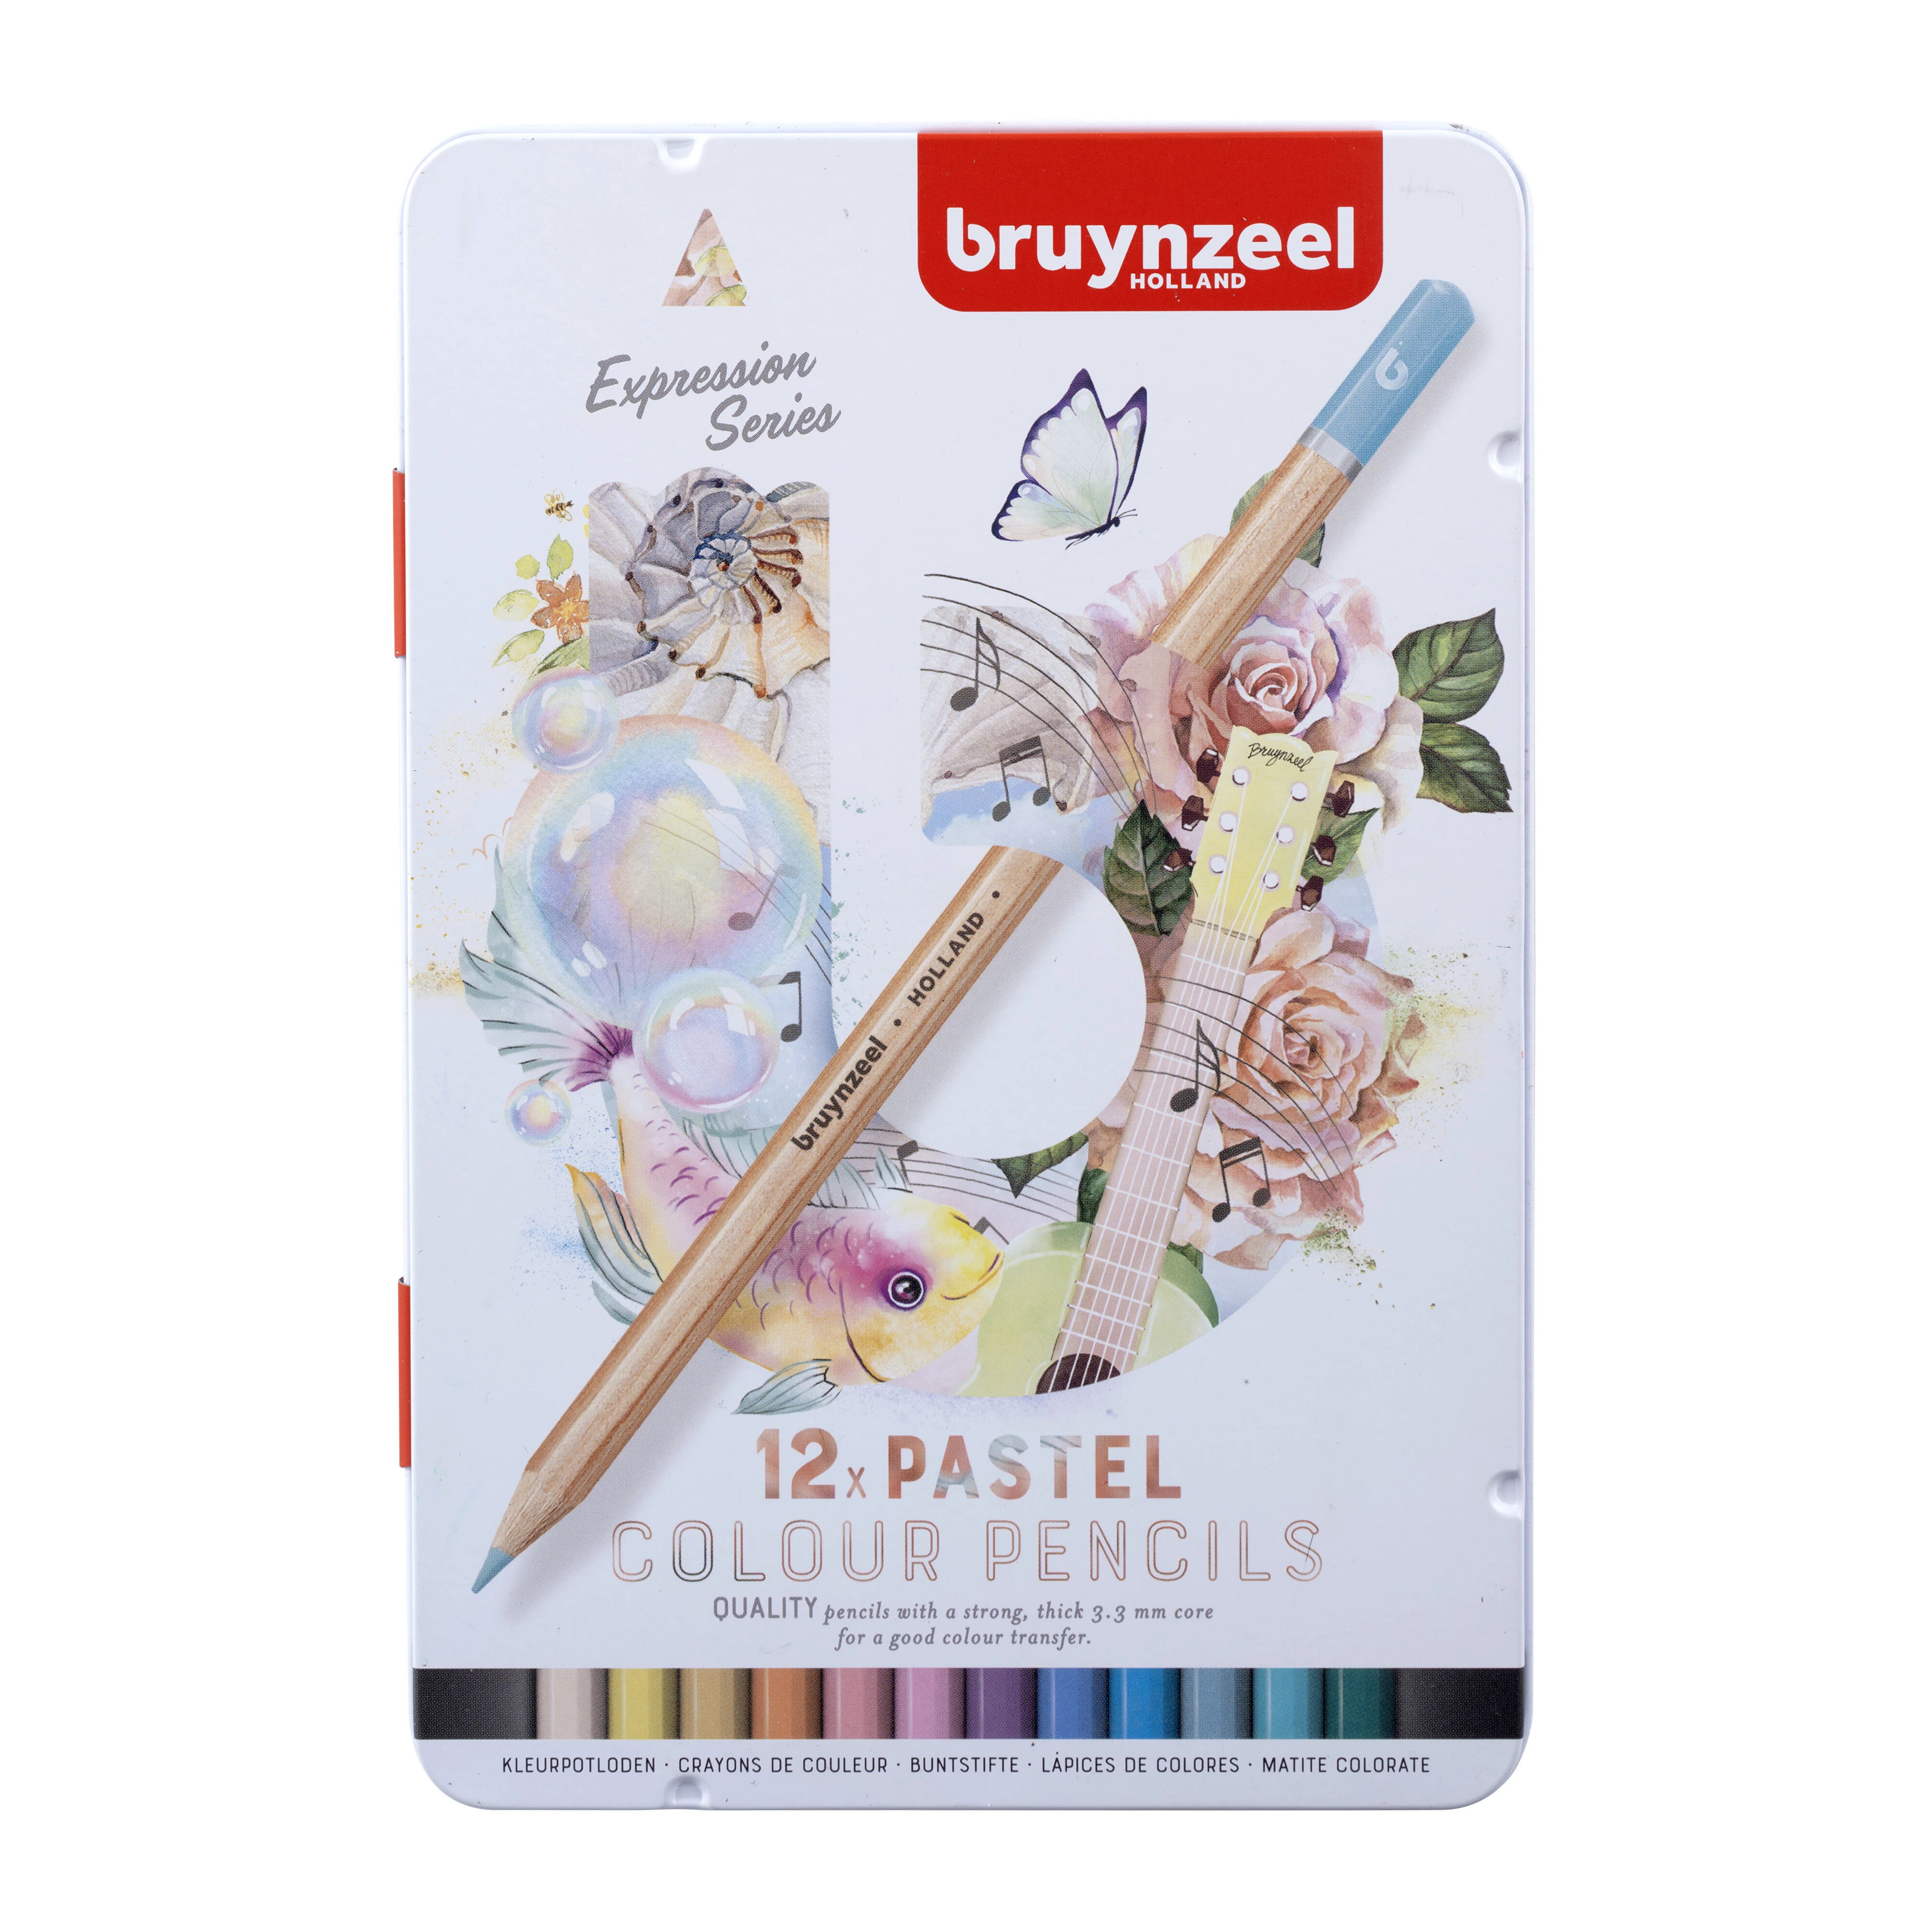 Estuche metálico de Lápices de colores Bruynzeel Expression tonos pastel de 12 artículos 